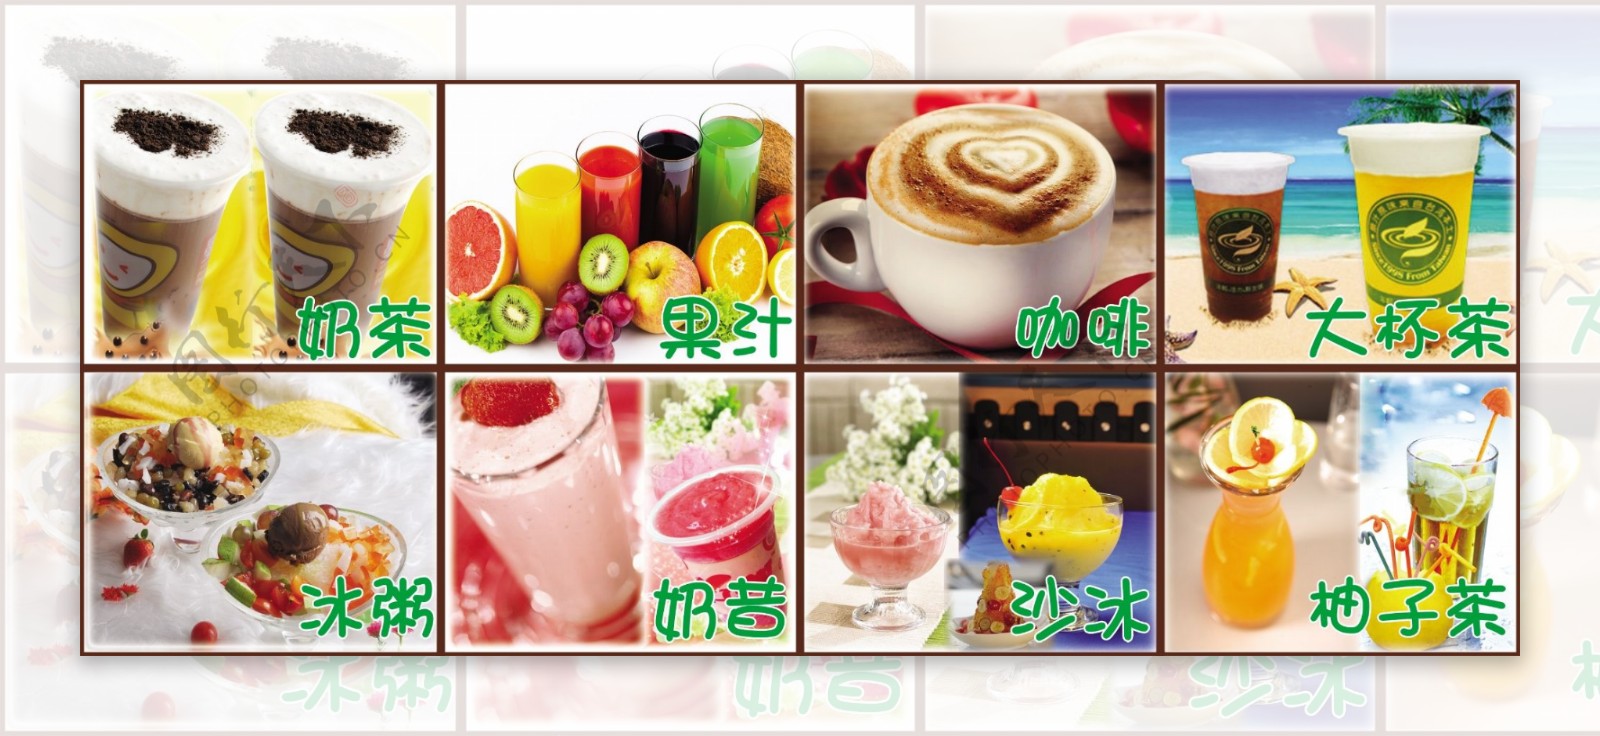 奶茶店广告设计图片